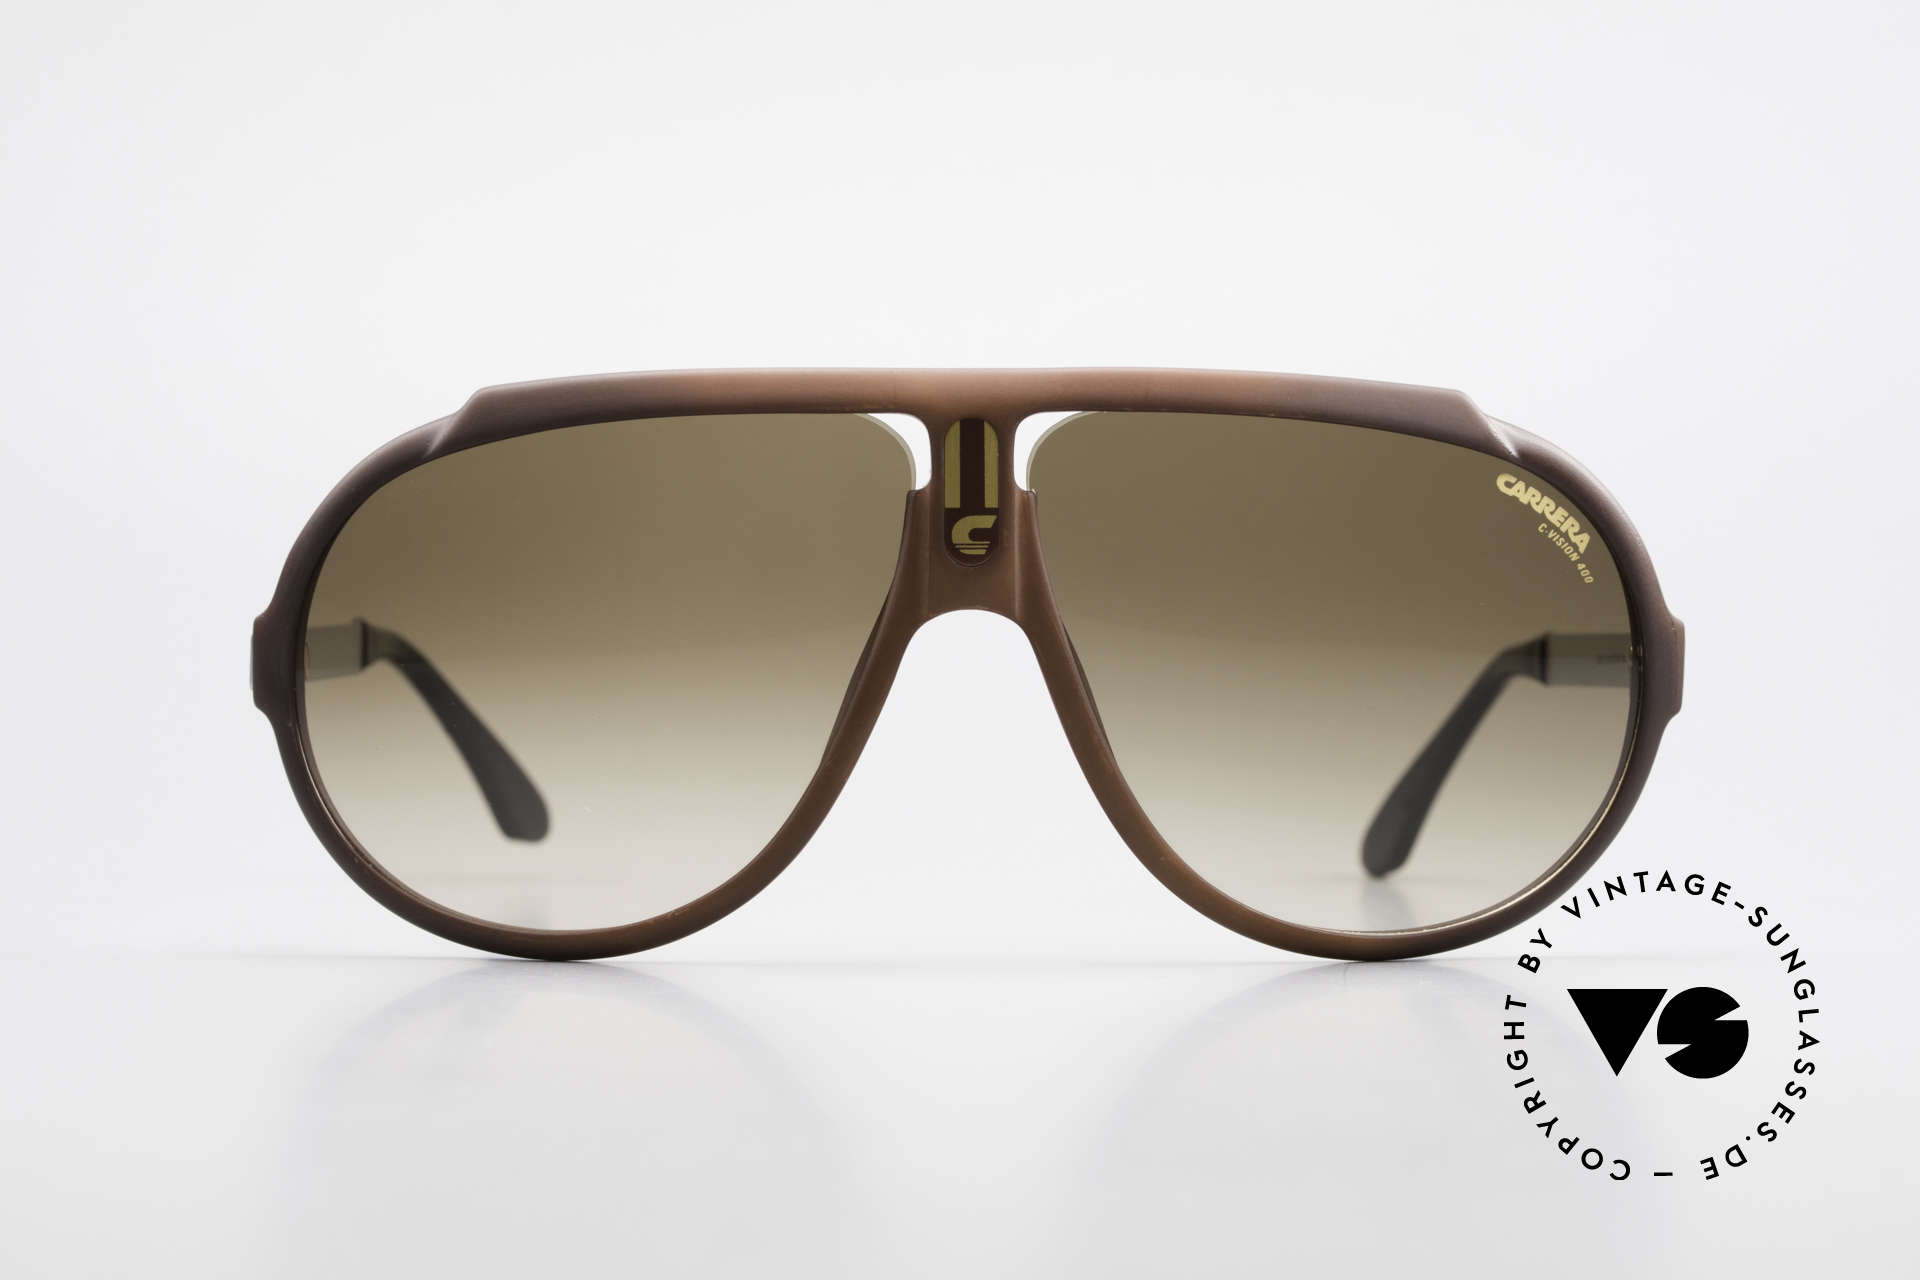 Sunglasses Carrera 5512 80's Don Johnson Sunglasses